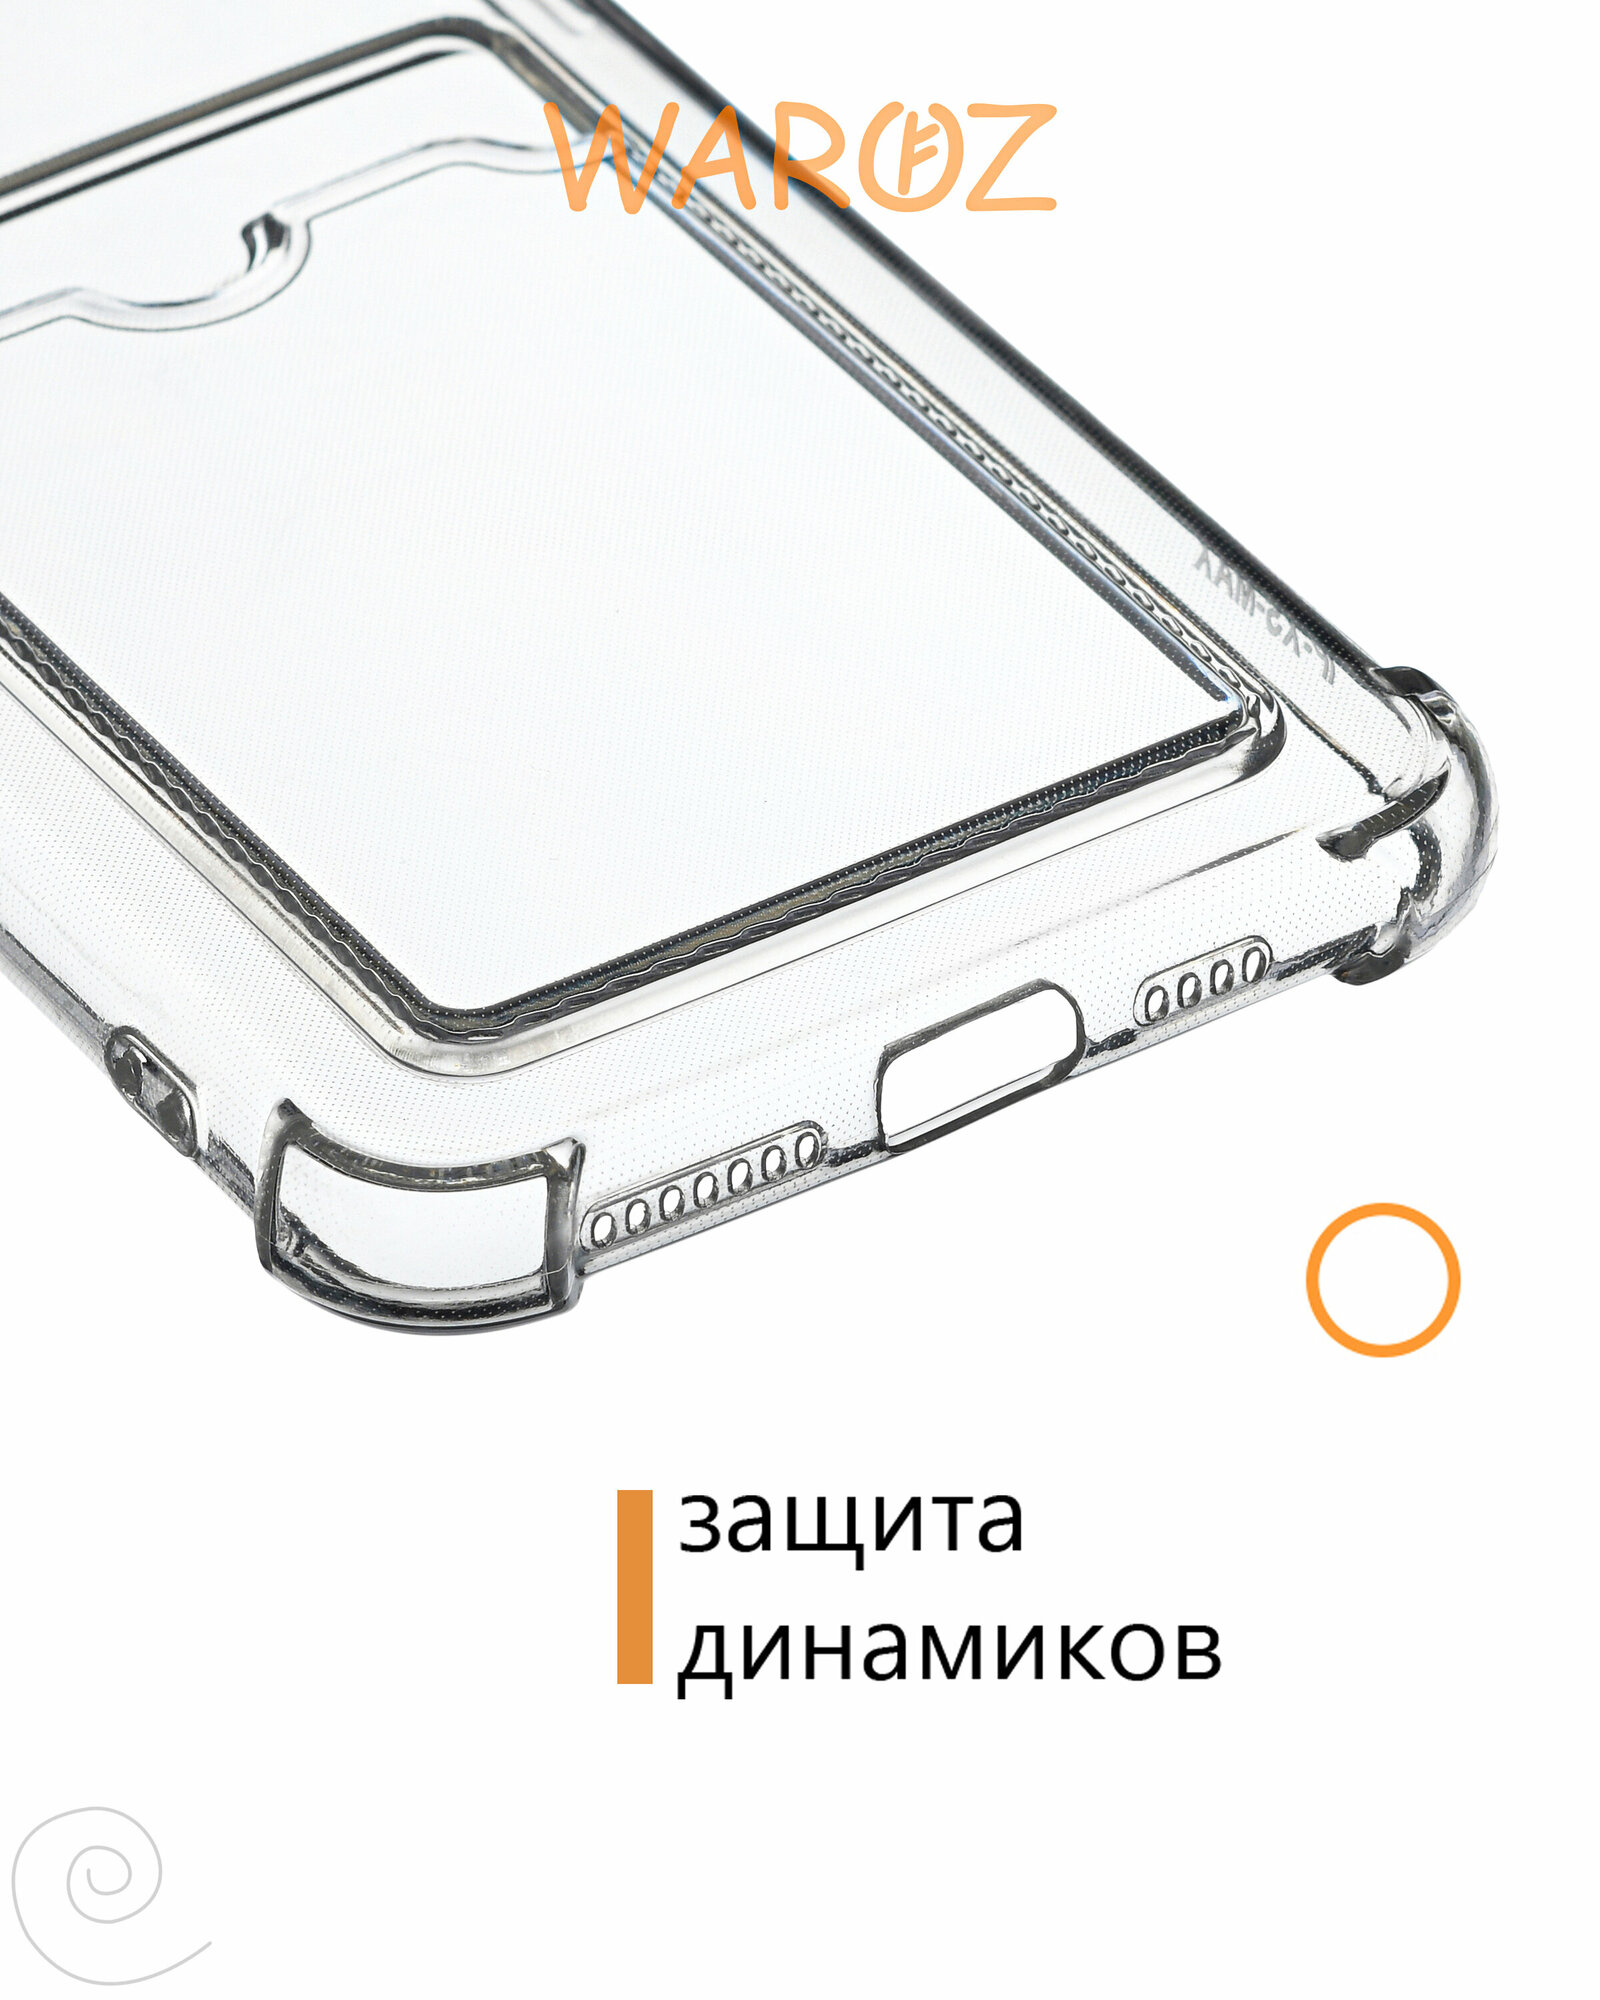 Чехол для смартфона Apple iPhone XS, X силиконовый противоударный, бампер усиленный для телефона Айфон ХС, Х с карманом для карт, прозрачный